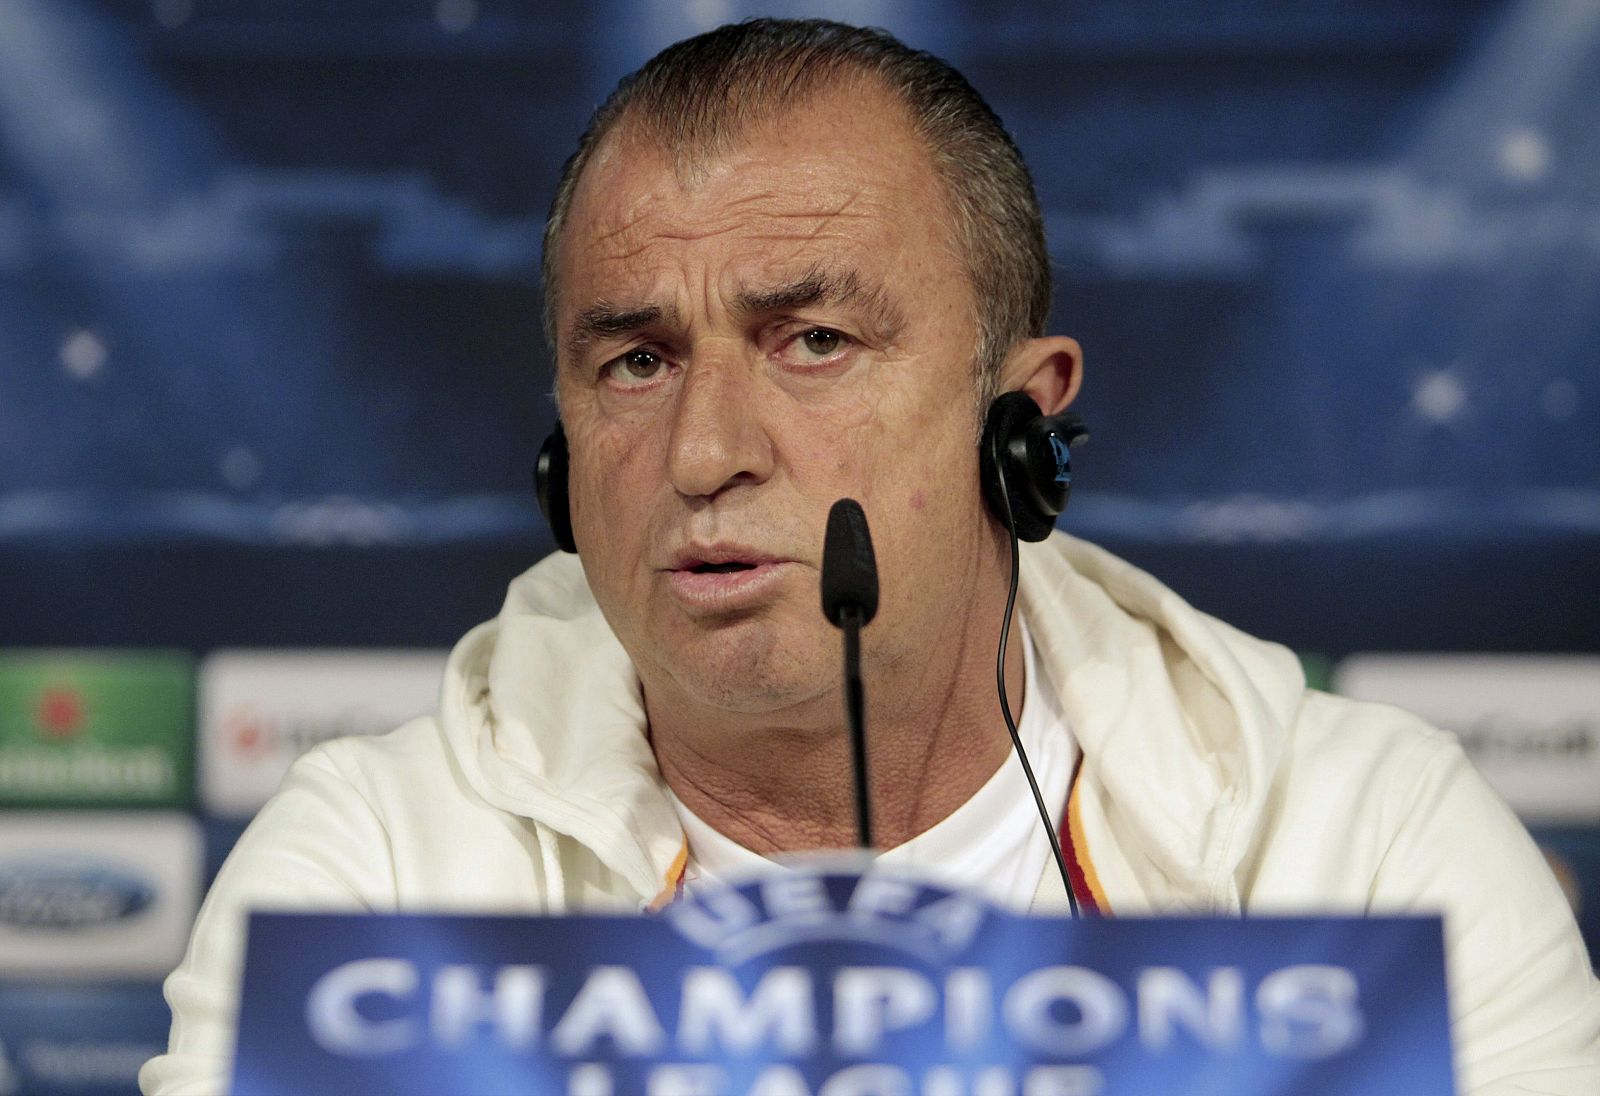 El entrenador del Galatasaray, Fatih Terim, durante la rueda de prensa